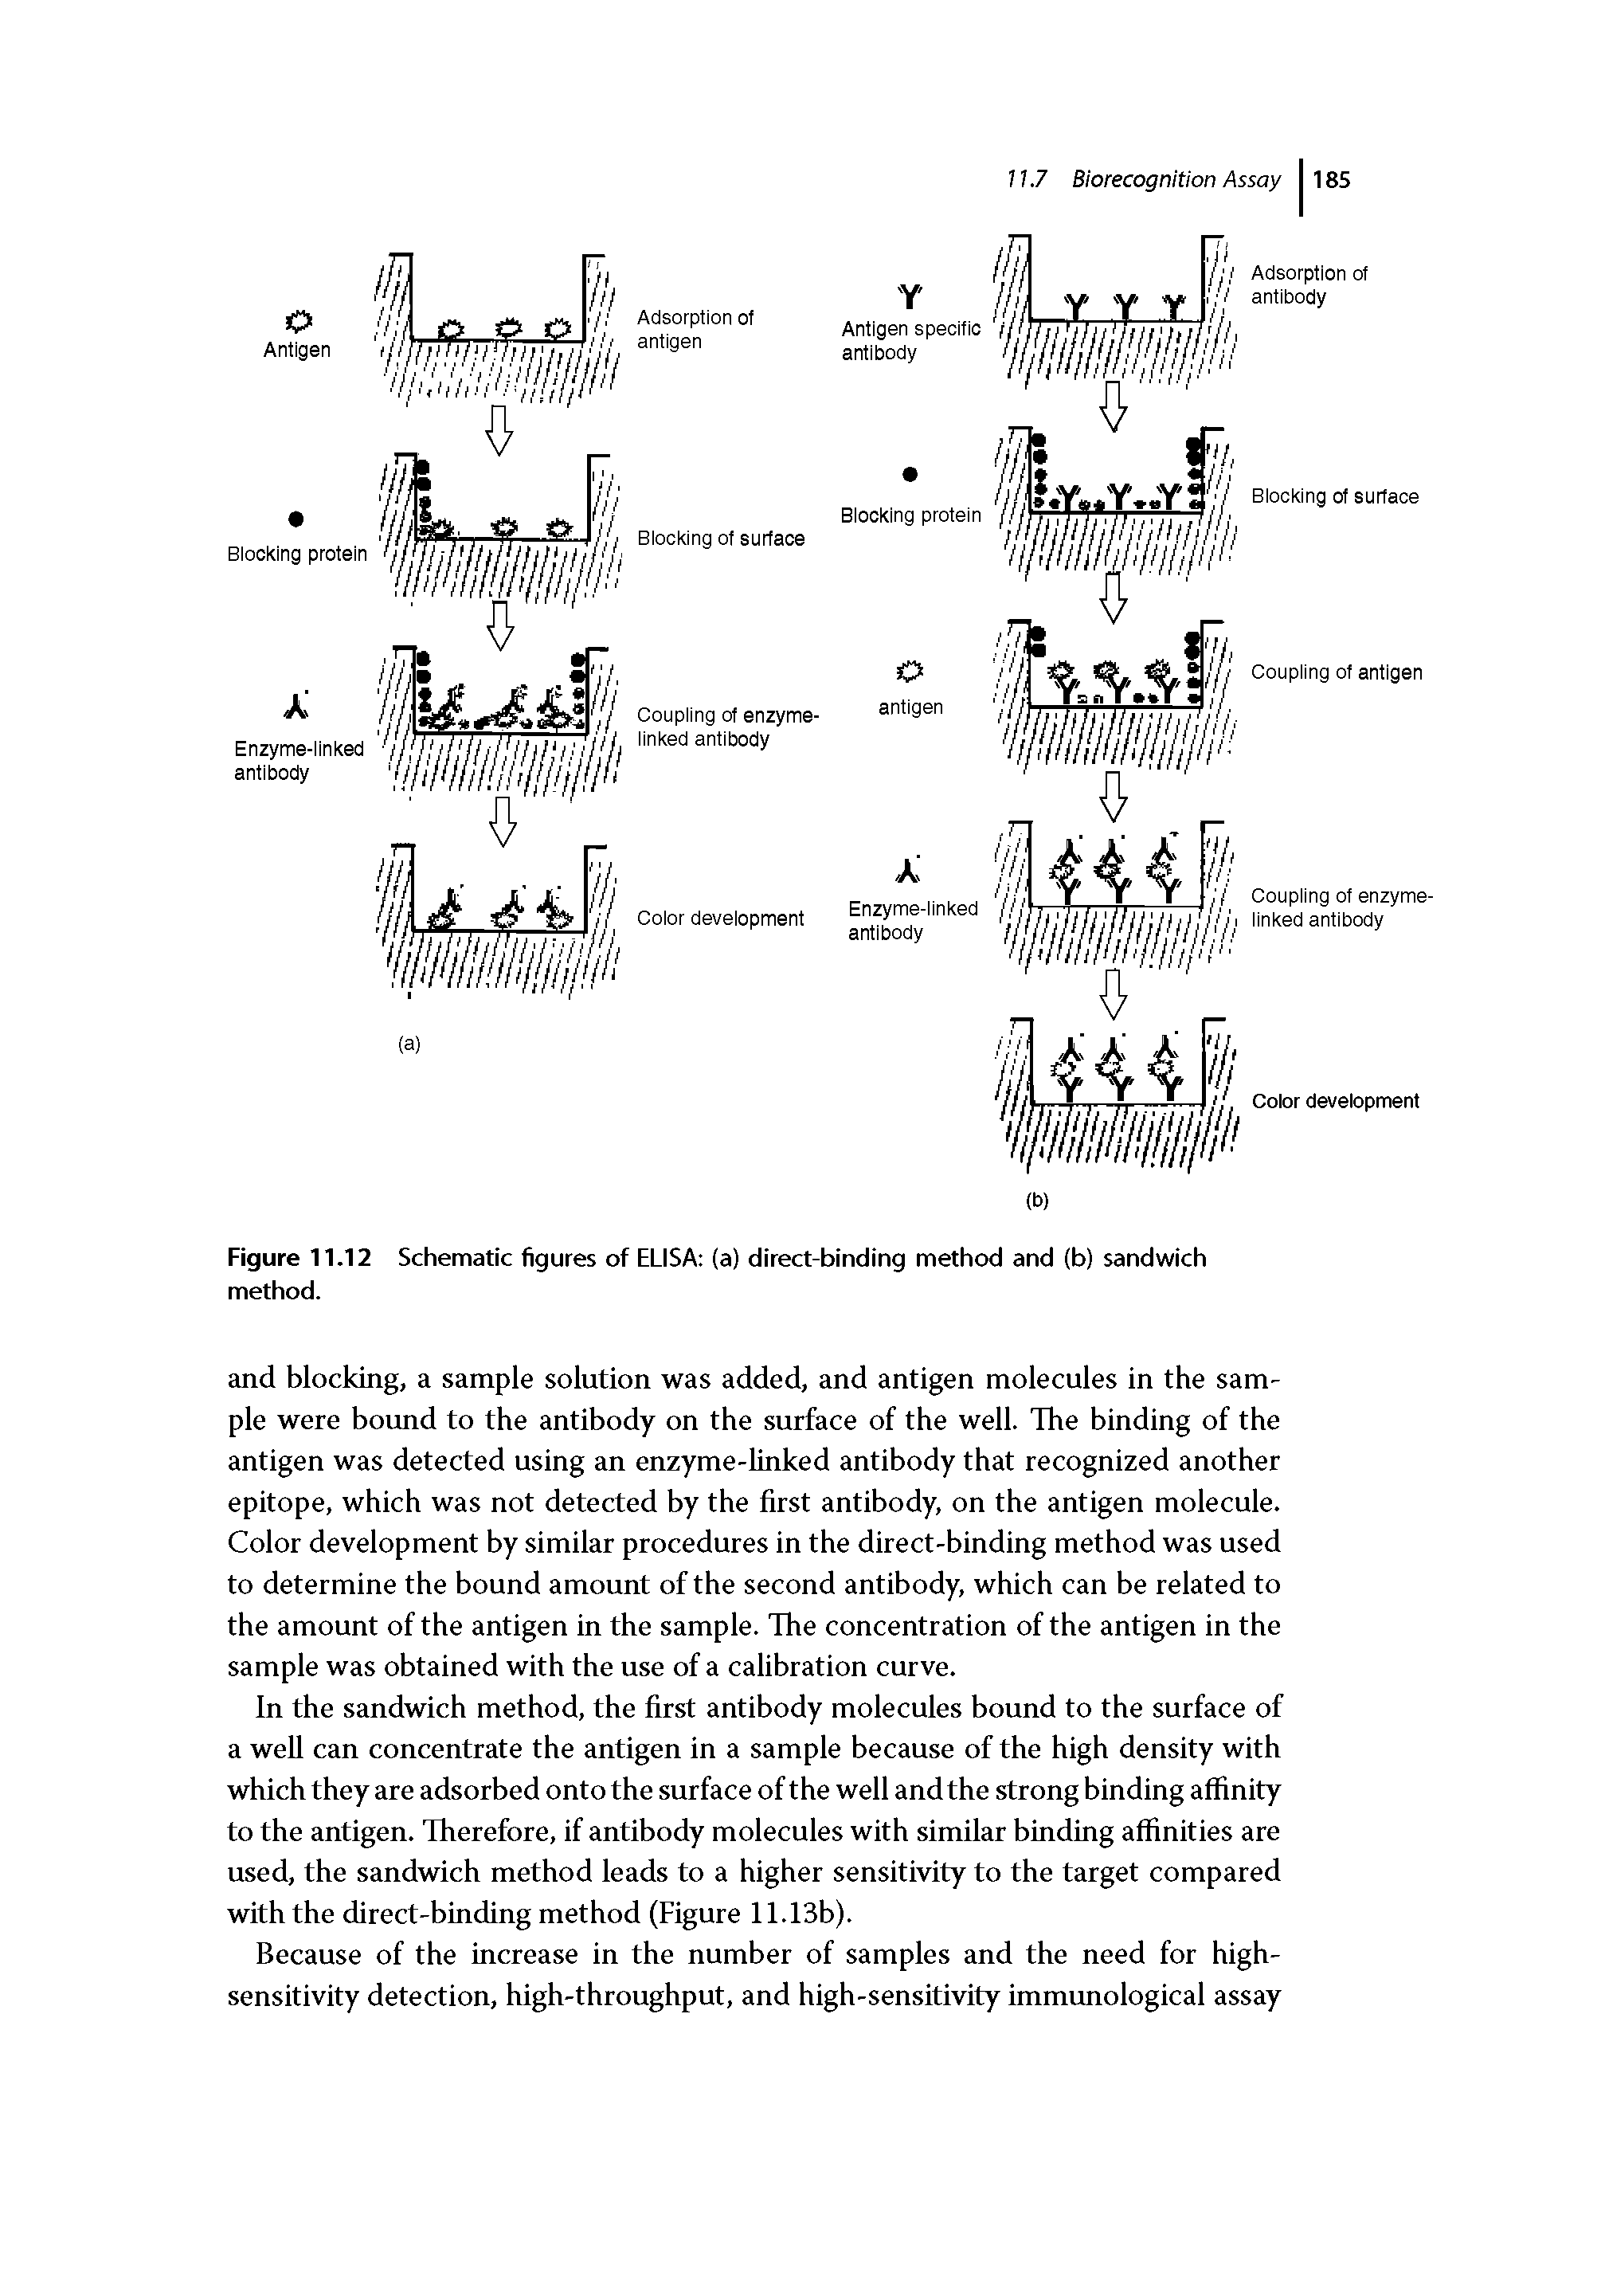 Figure 11.12 Schematic figures of ELISA (a) direct-binding method and (b) sandwich method.